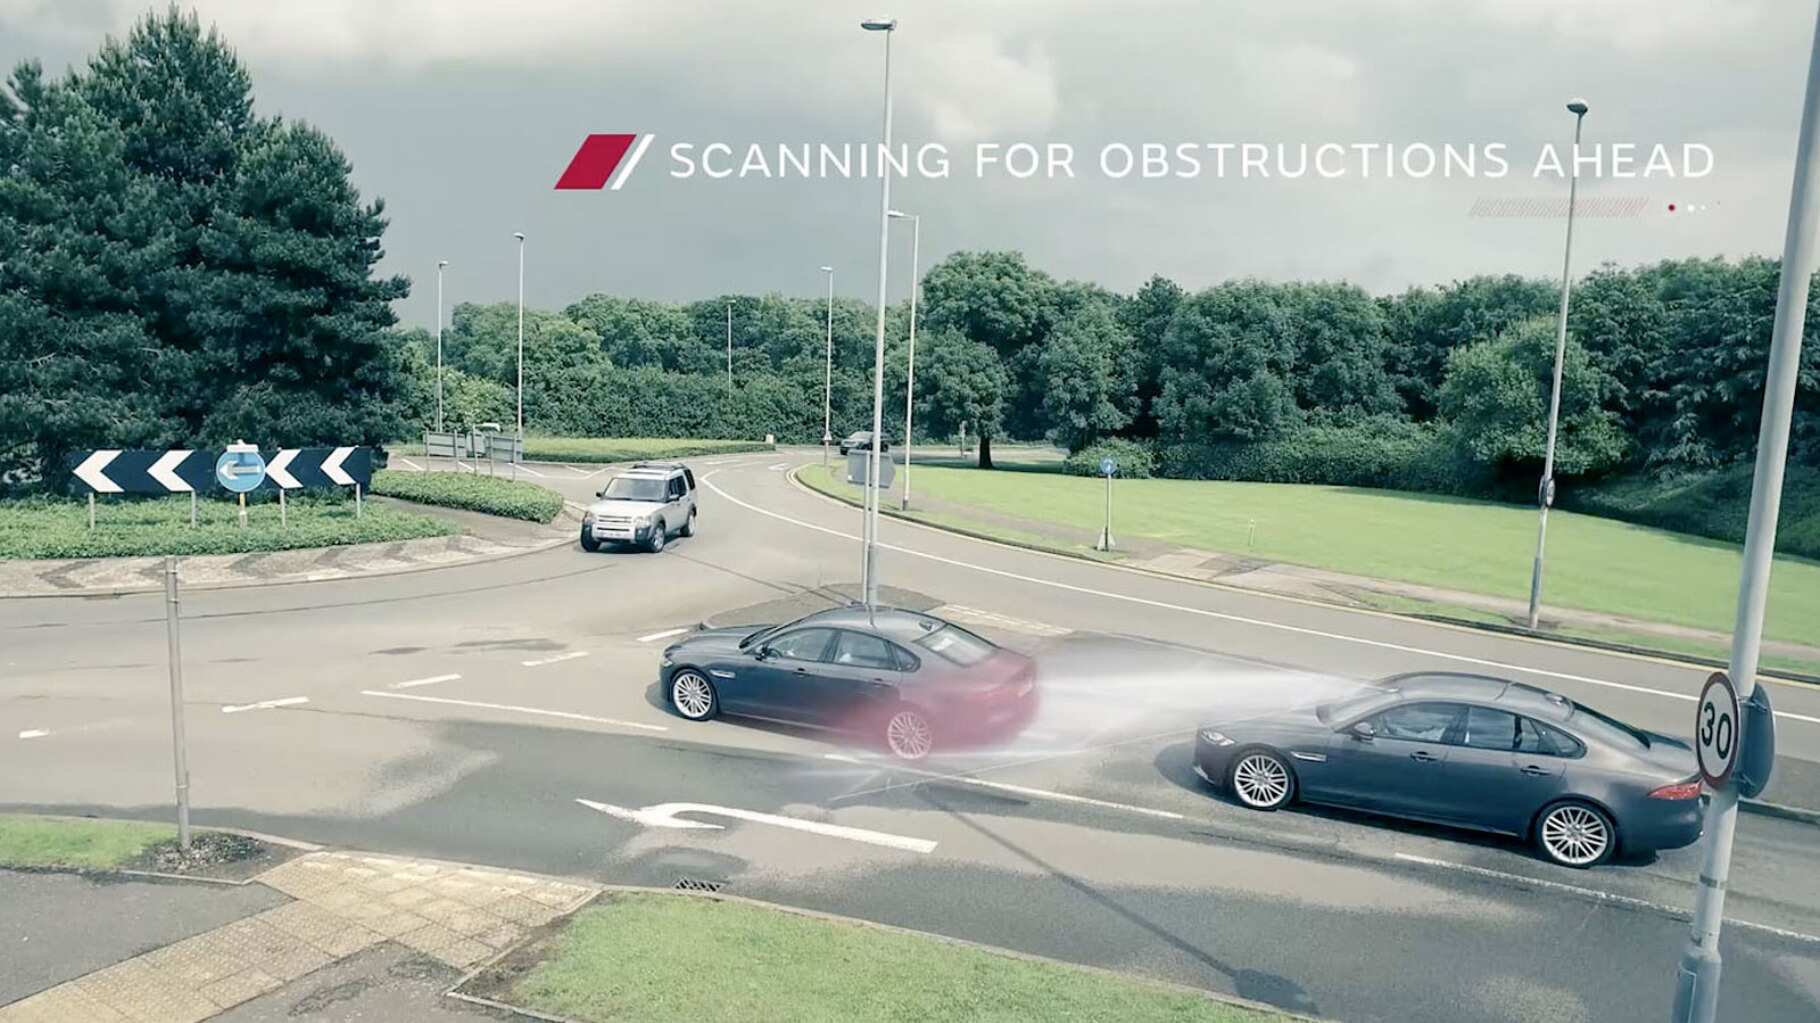 Jaguar Autonomous Vehicle On A Road Scanning For Obstacles.